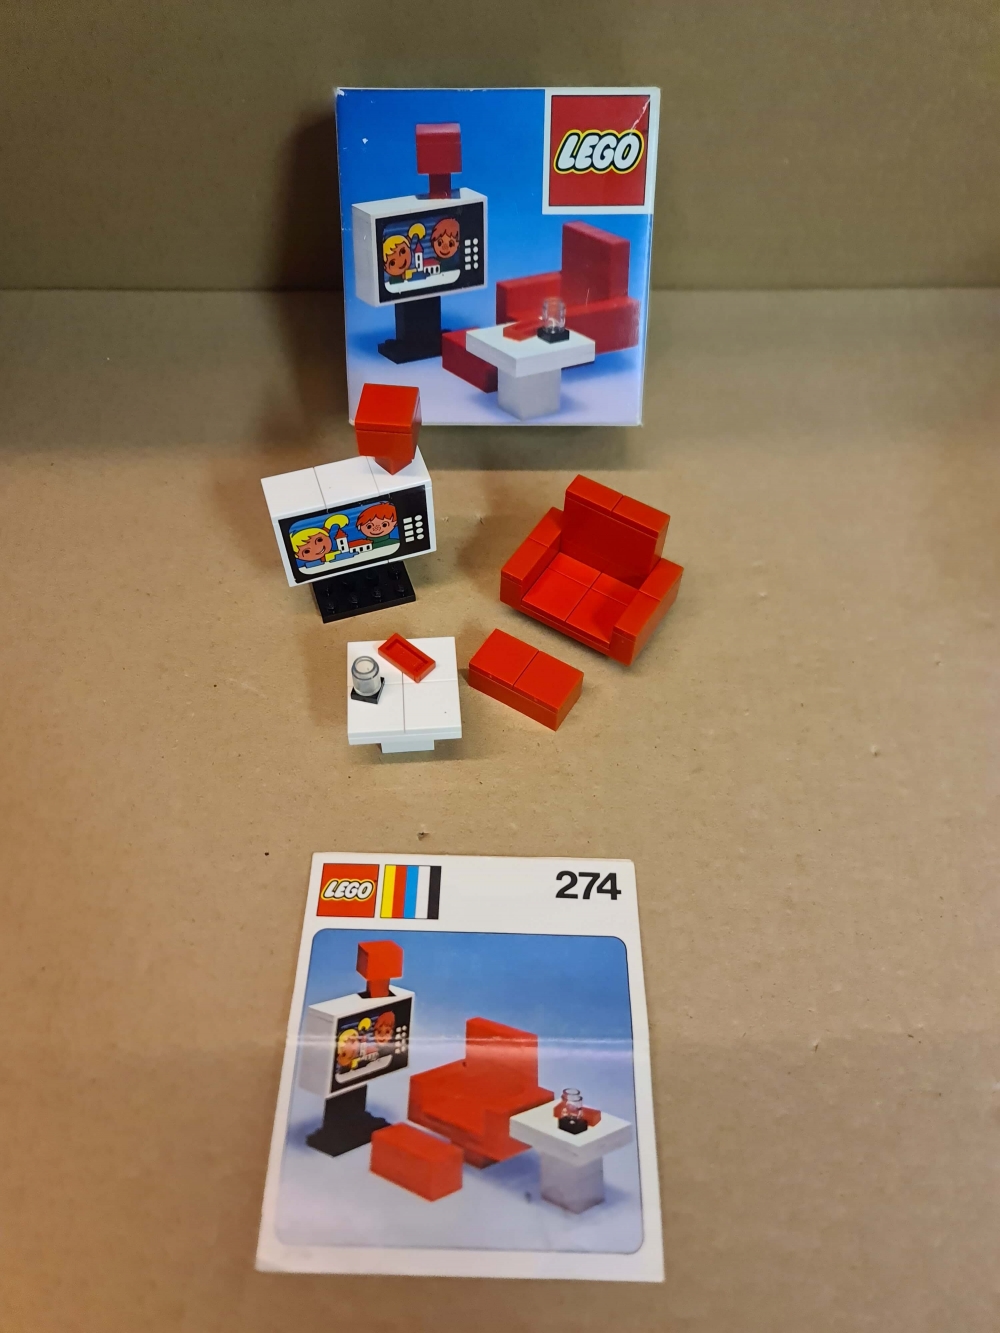 Sett 274 fra Lego Homemaker serien.

Nydelig sett. Ser nytt ut.
Komplett med manual og eske.